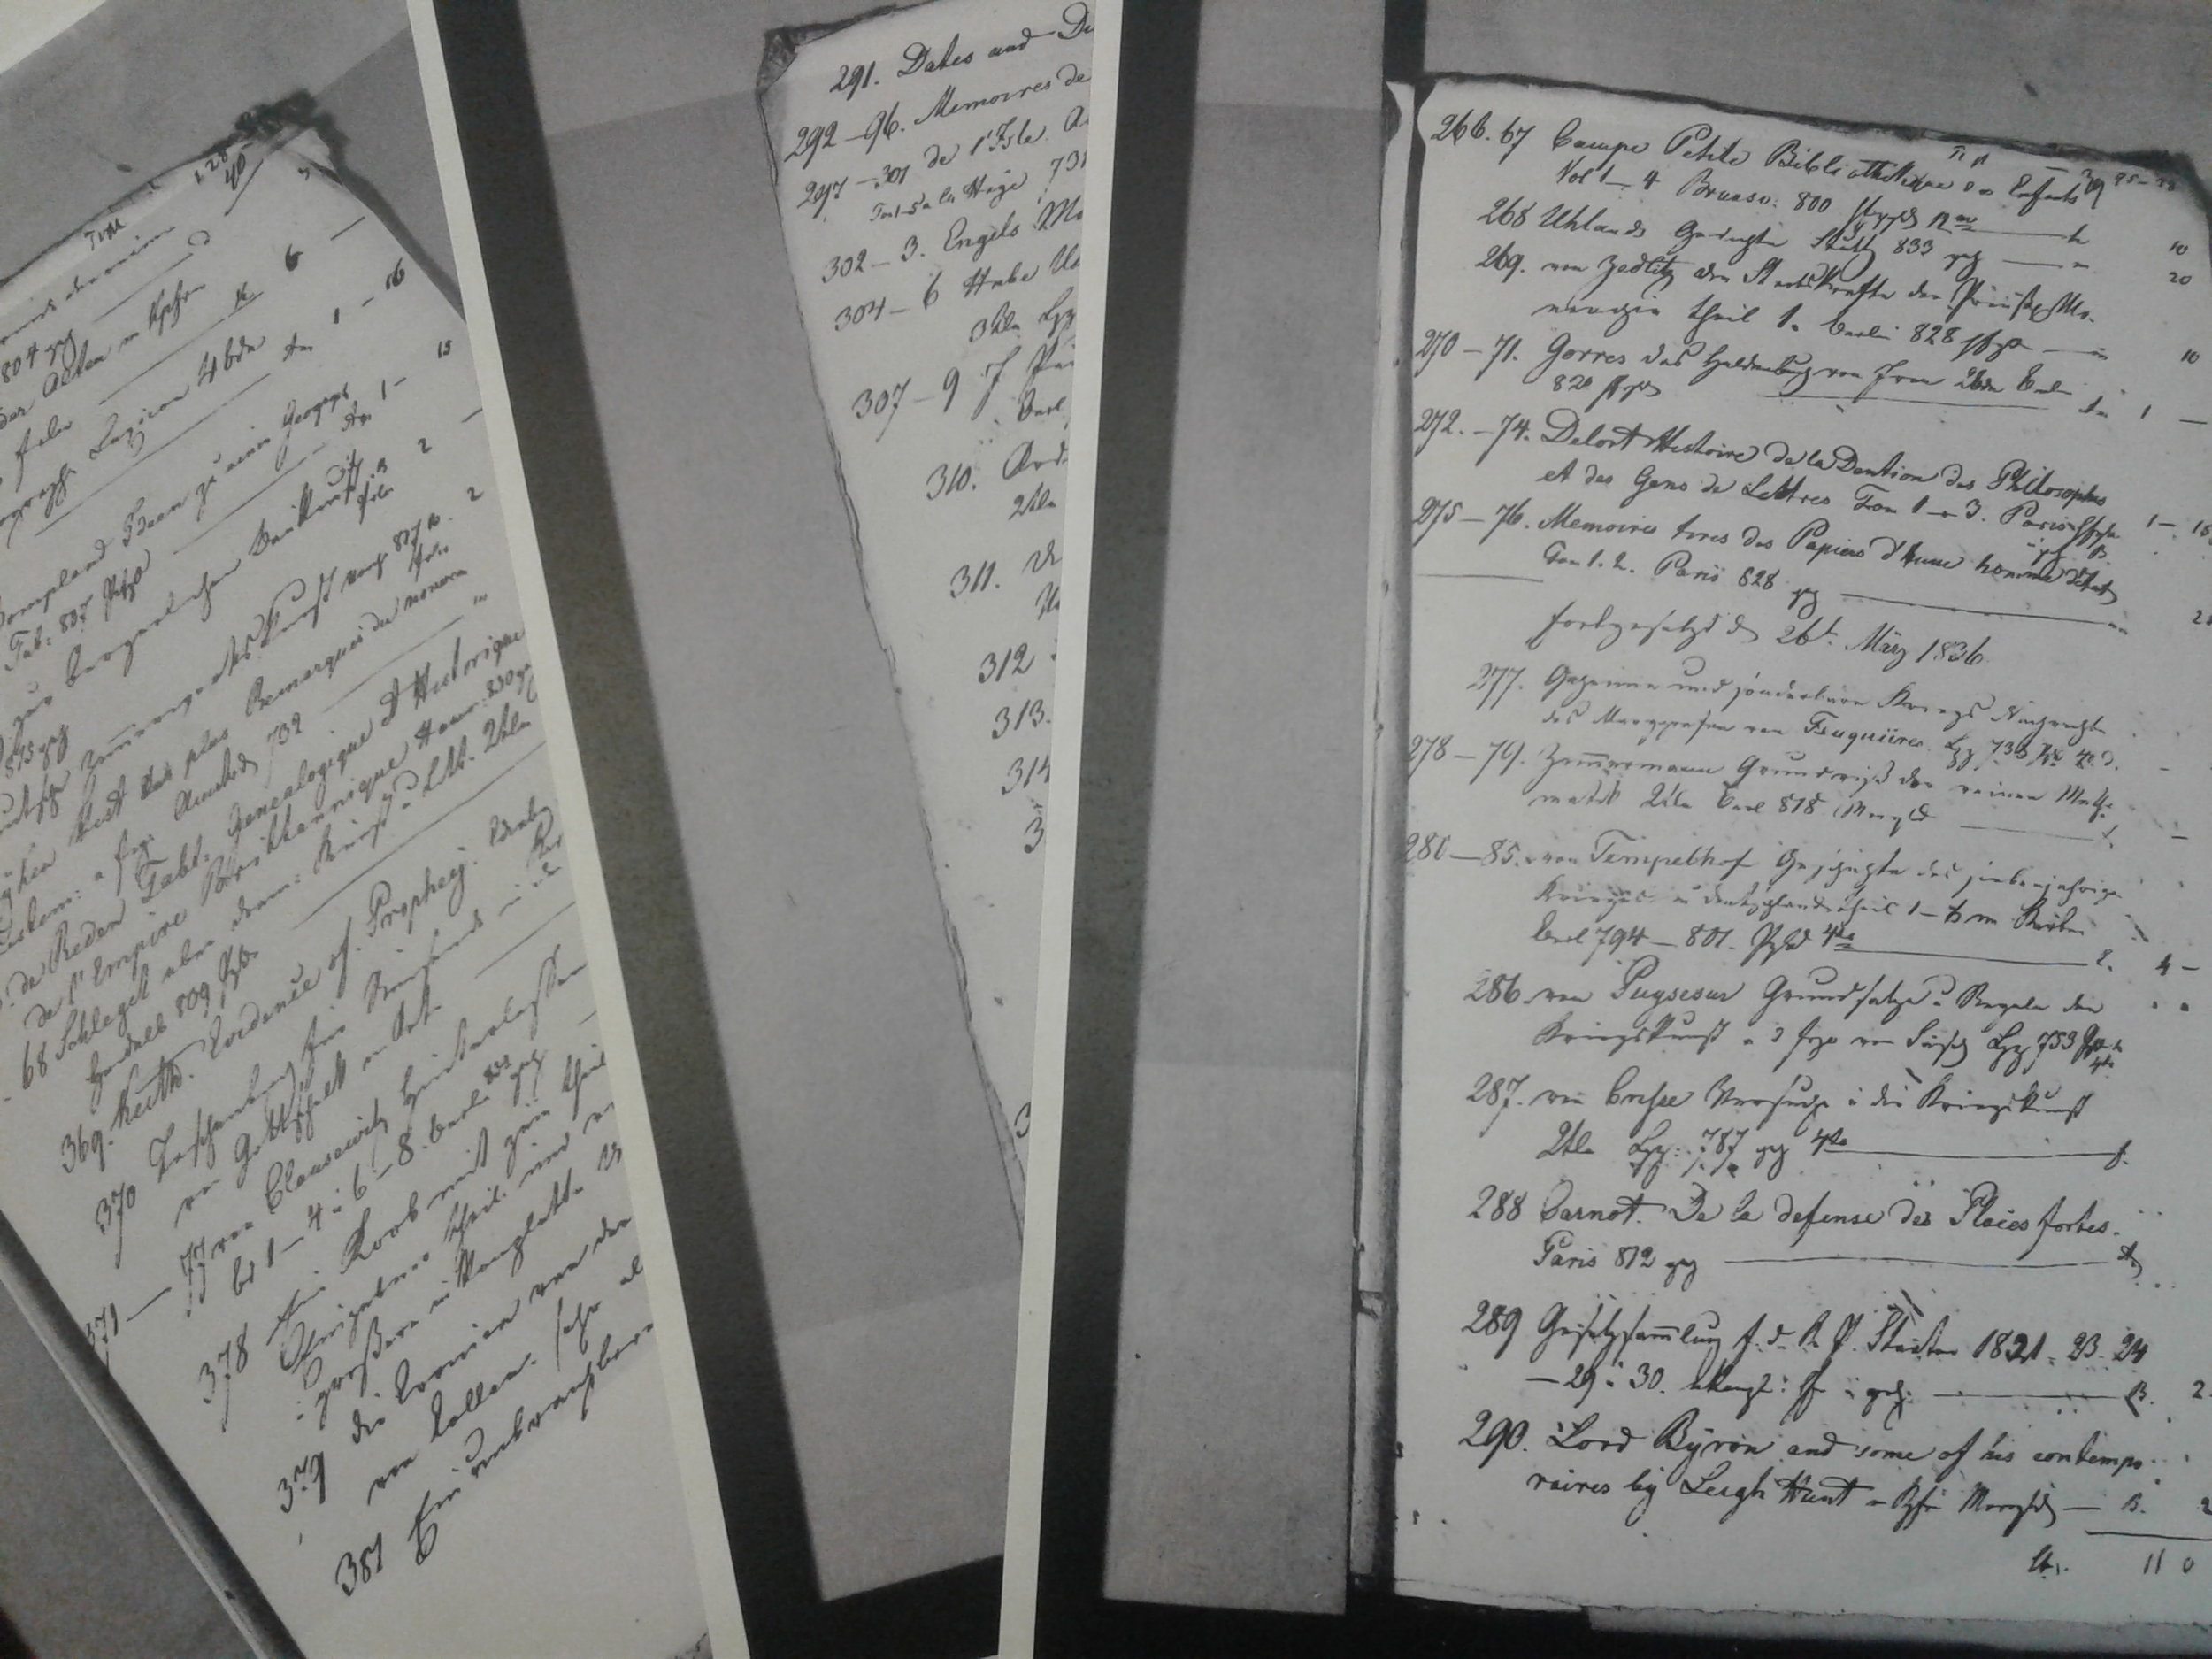   Pages from the booklist found in the Testament of Marie von Clausewitz (Courtesy of Brandenburgisches Landesarchive/Brandenburg State Archive)  